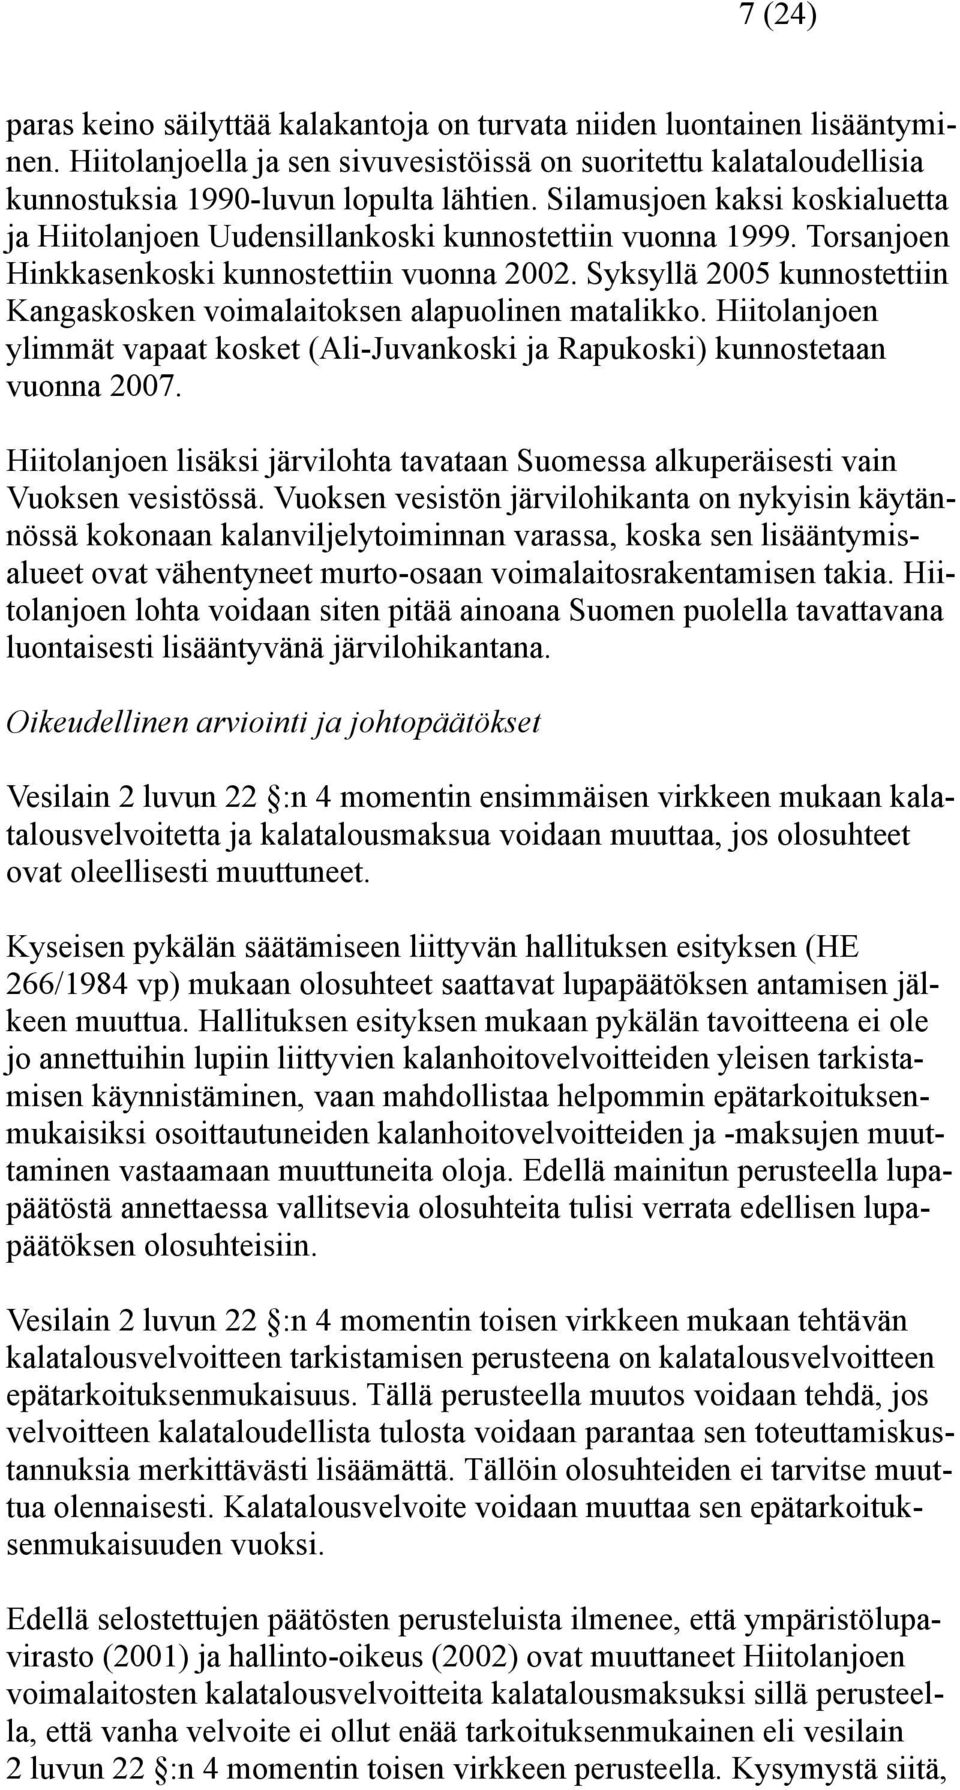 Syksyllä 2005 kunnostettiin Kangaskosken voimalaitoksen alapuolinen matalikko. Hiitolanjoen ylimmät vapaat kosket (Ali-Juvankoski ja Rapukoski) kunnostetaan vuonna 2007.